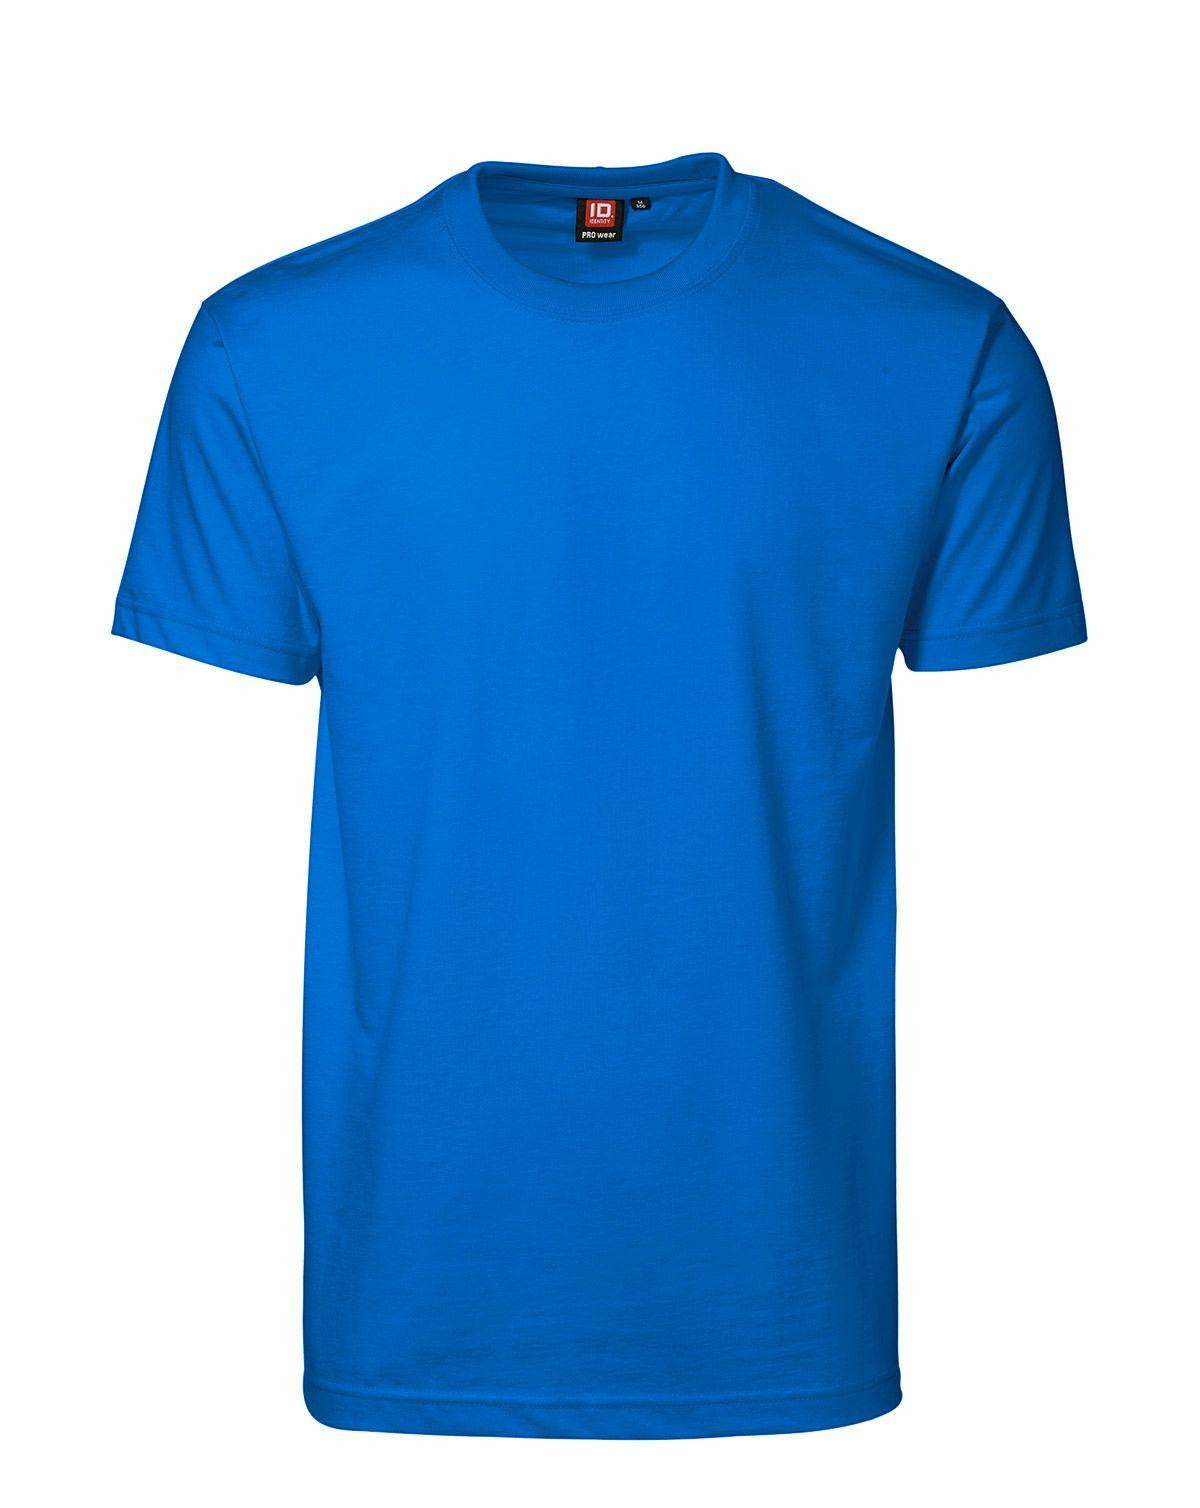 ID PRO Wear T-shirt til Herre (Azure, 6XL)